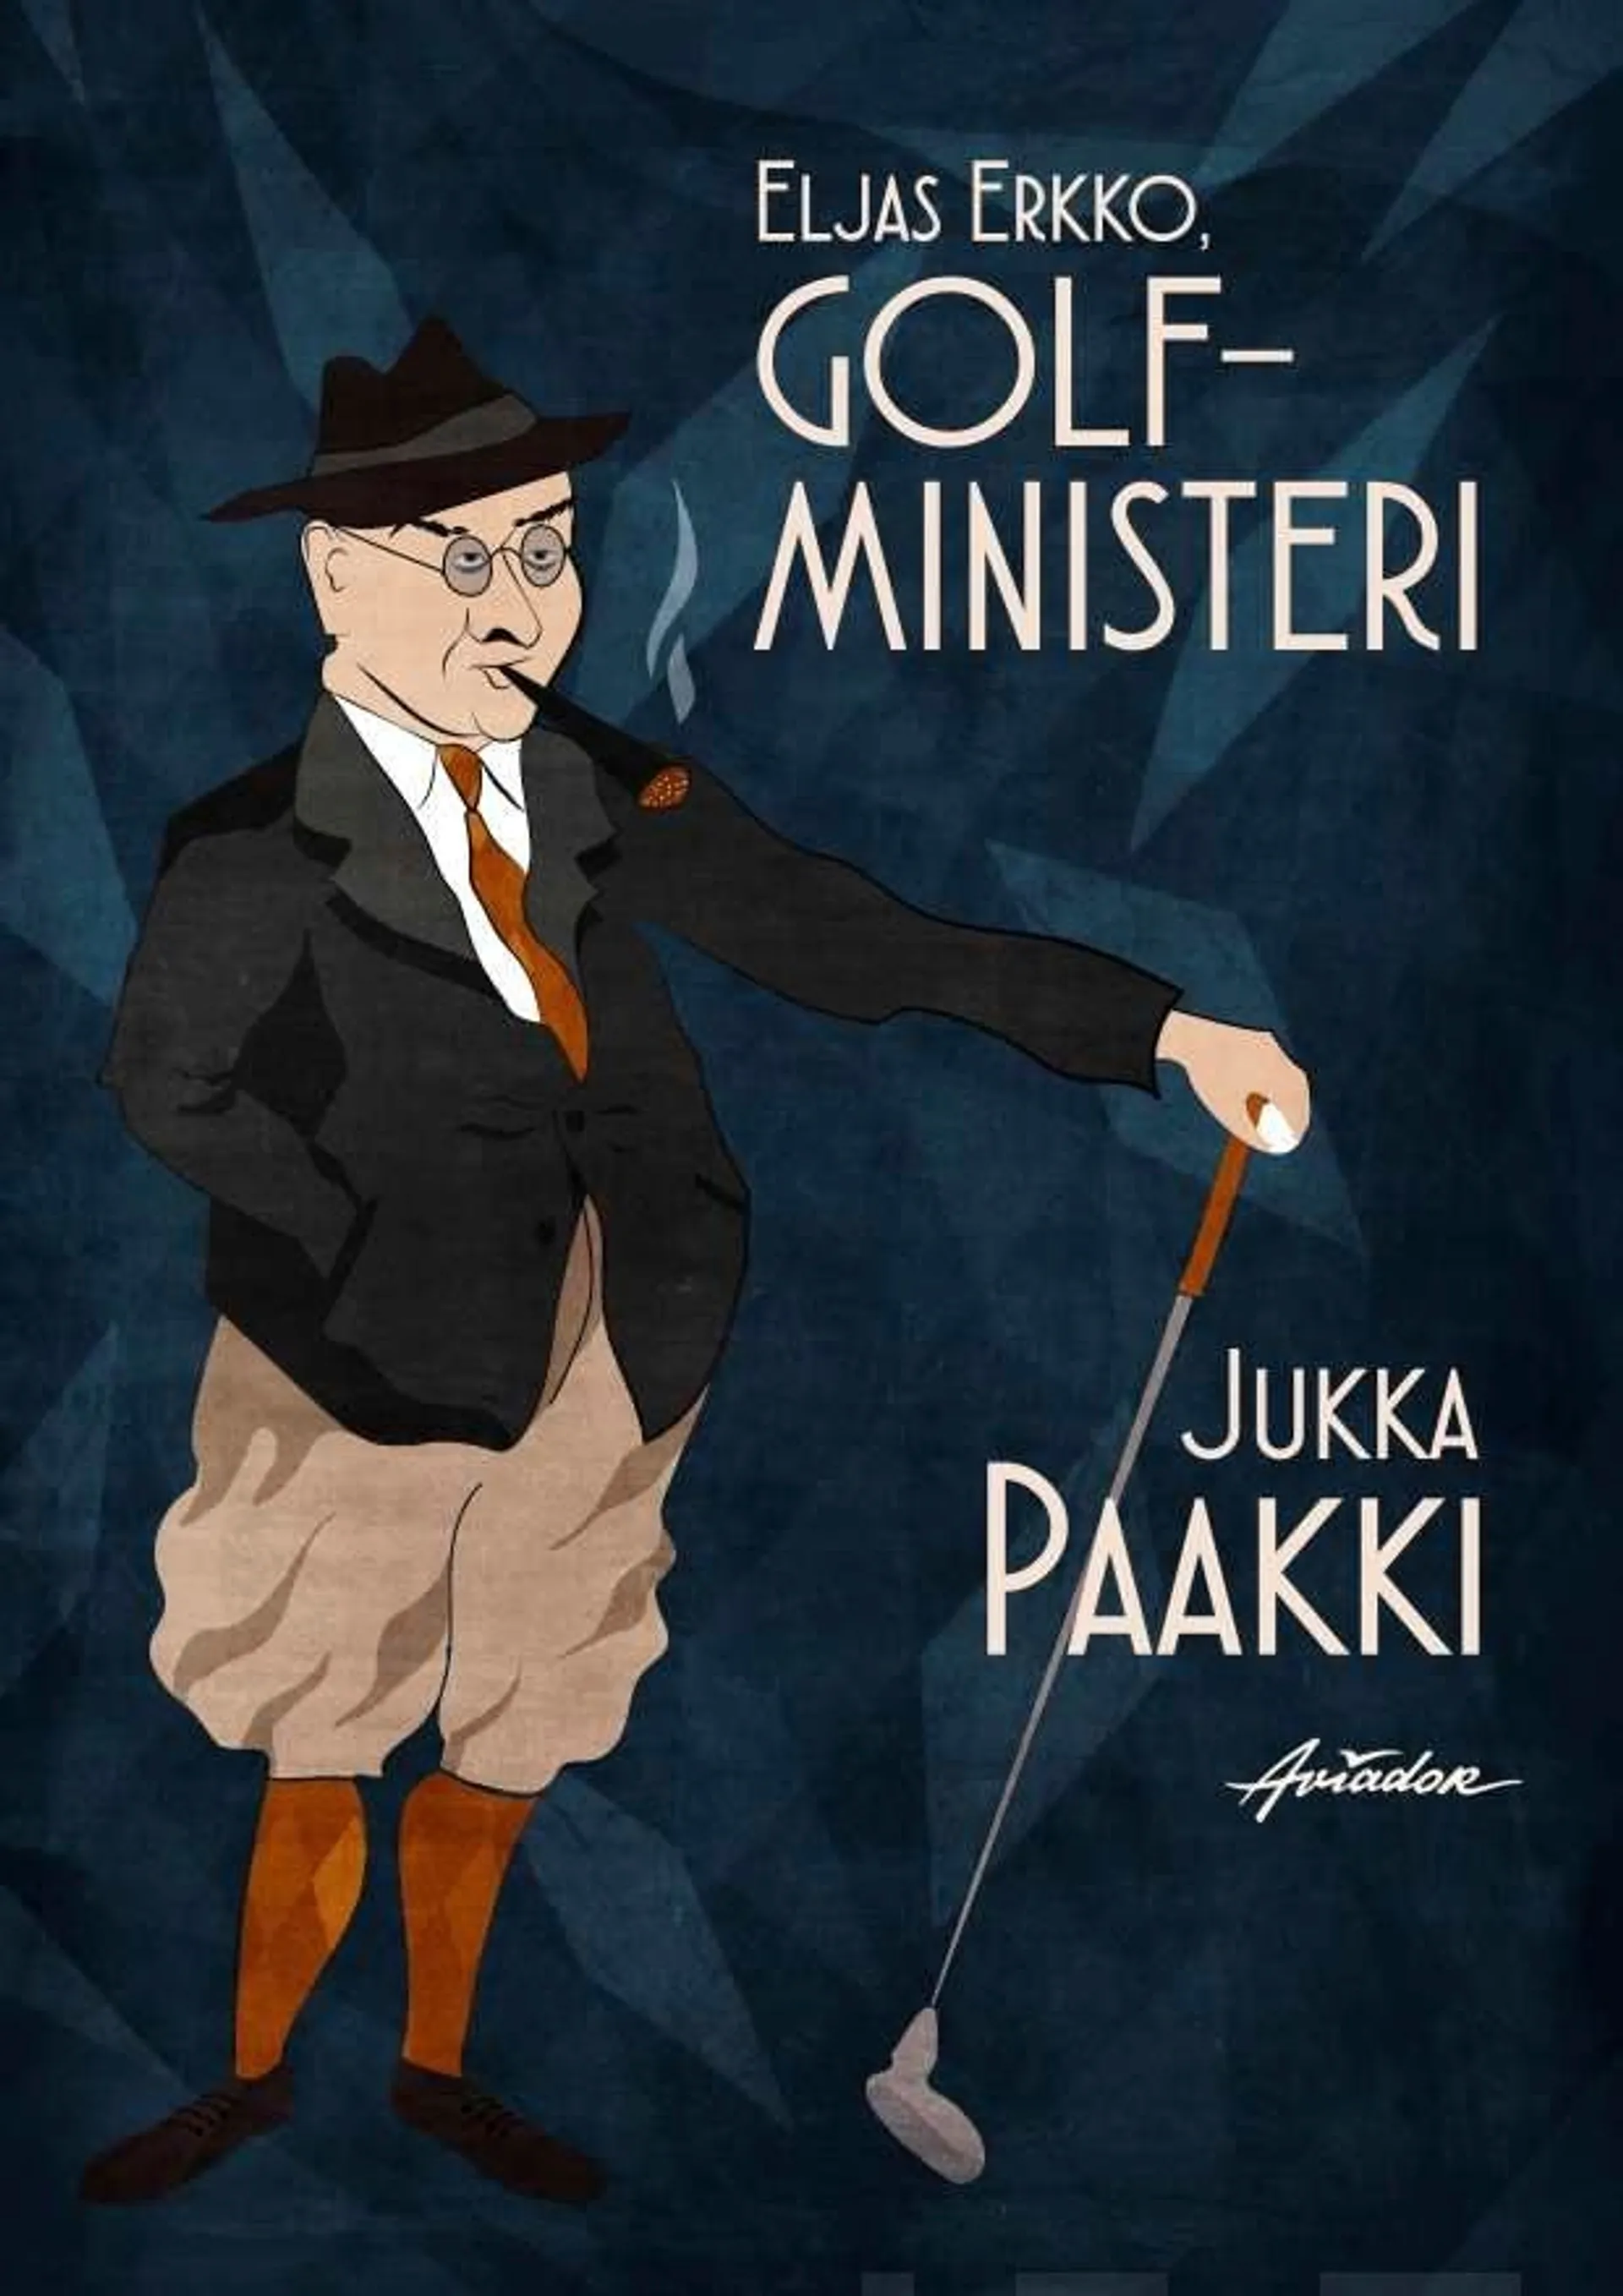 Paakki, Eljas Erkko, golfministeri